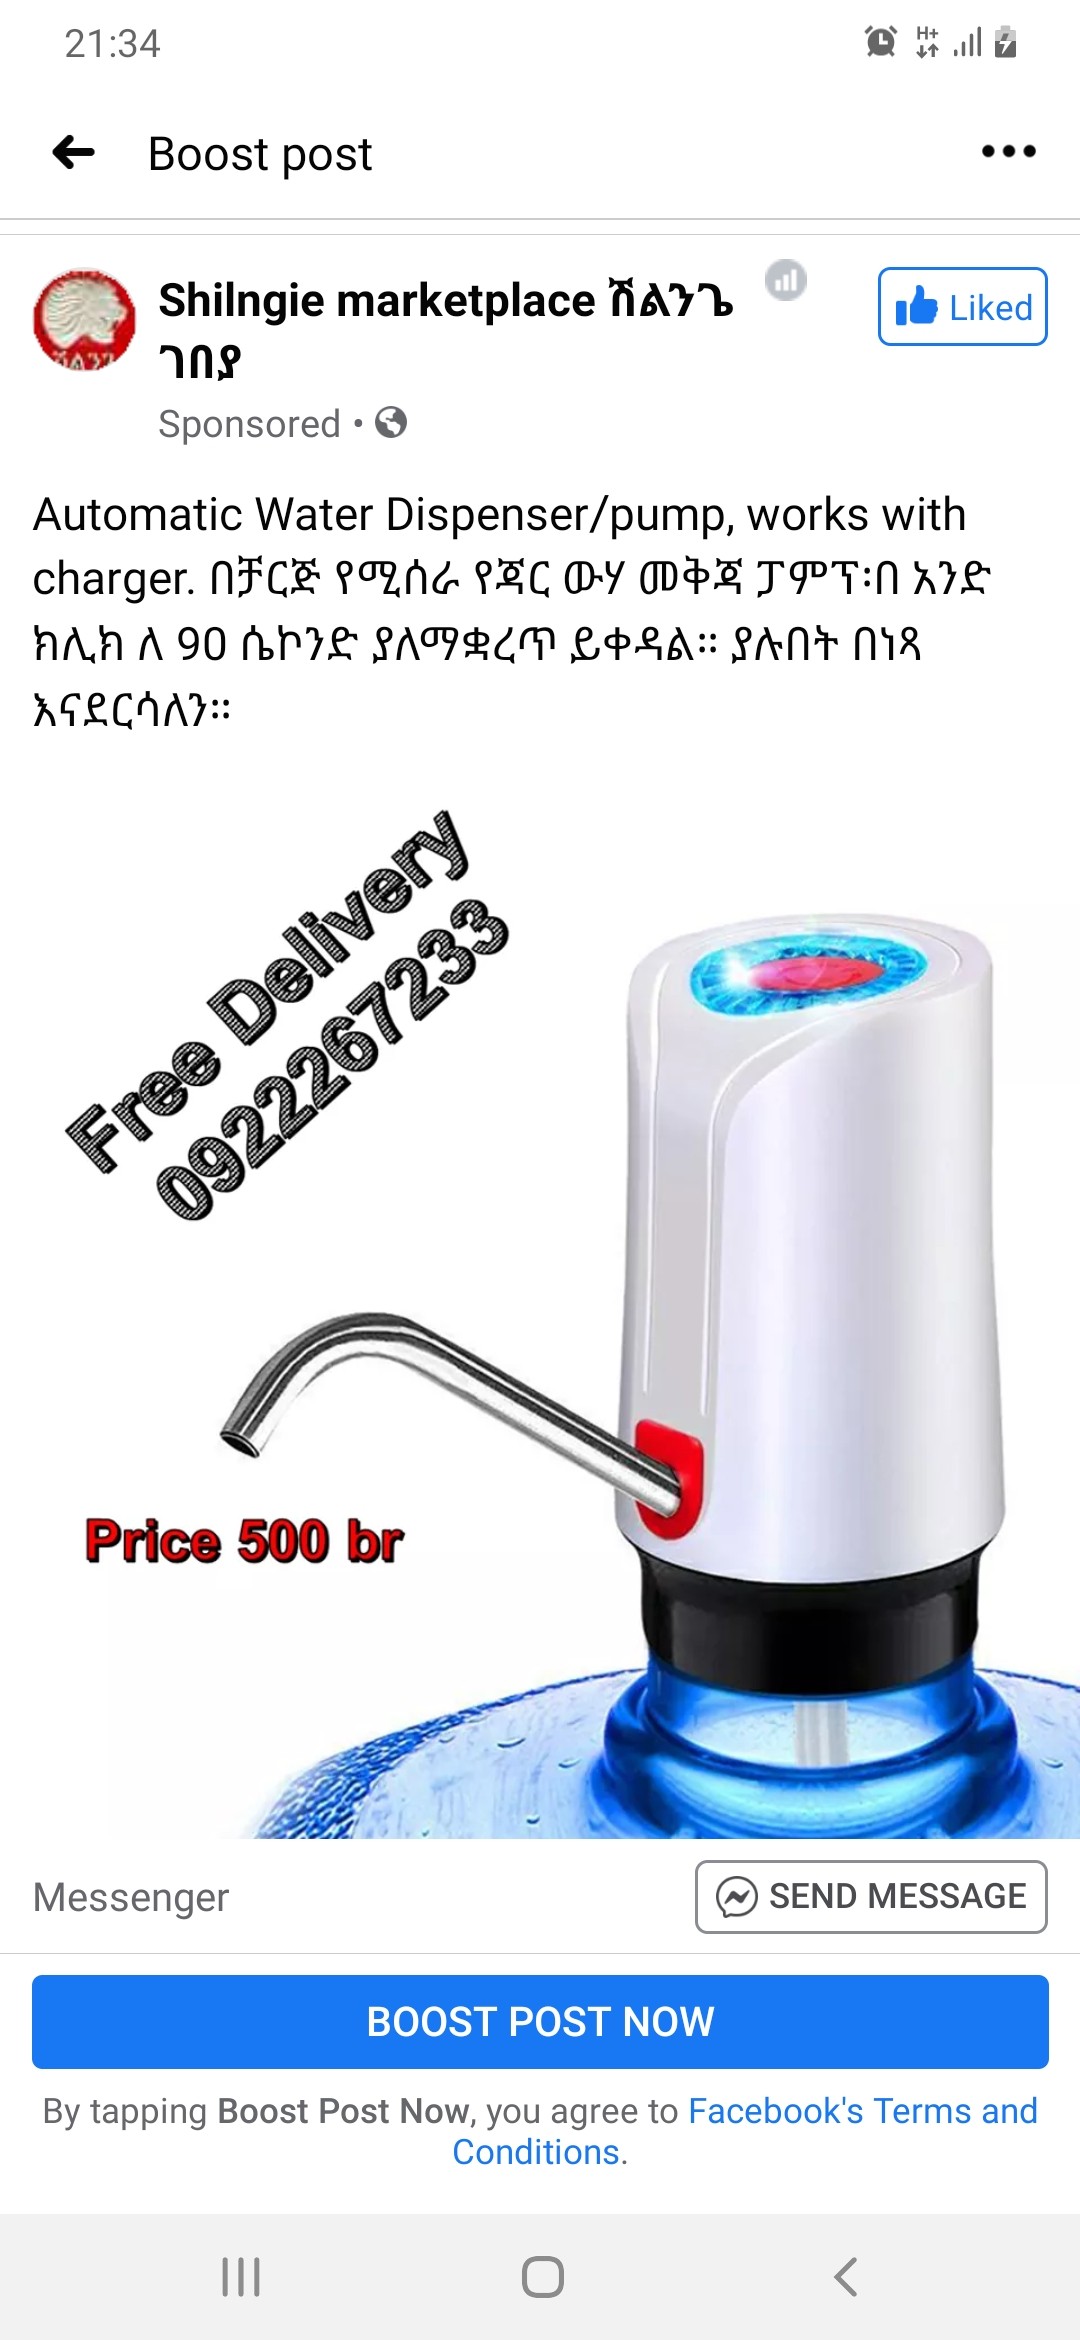 Water dispenser/pump